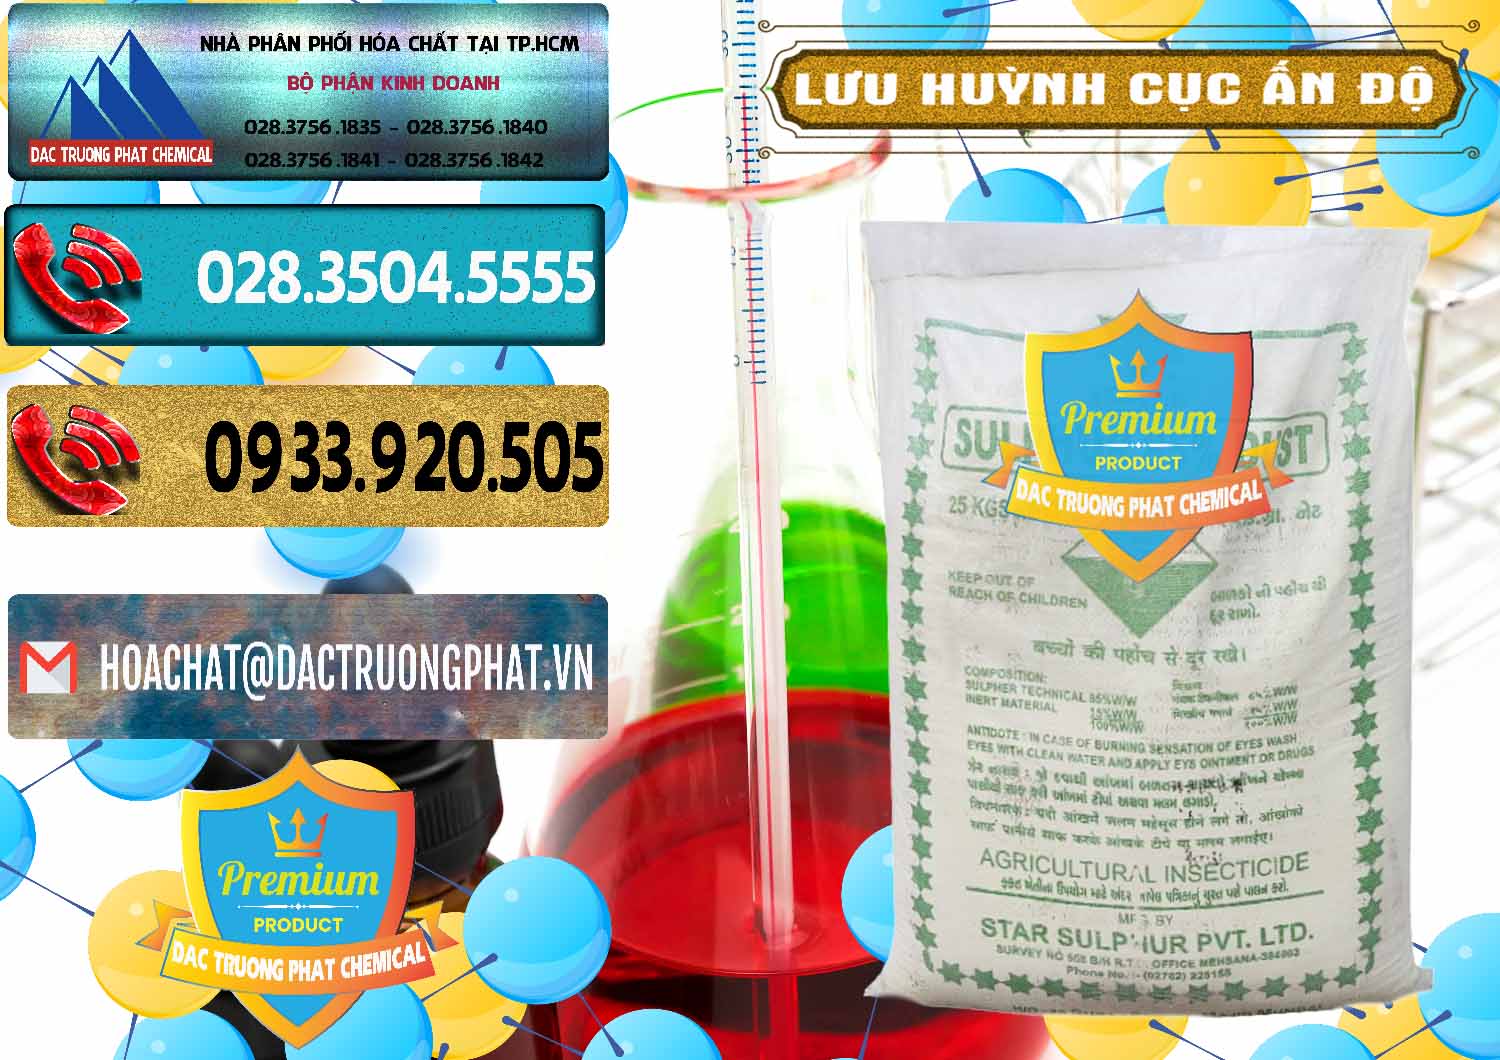 Nơi chuyên nhập khẩu & bán Lưu huỳnh Cục - Sulfur Ấn Độ India - 0348 - Nơi bán và phân phối hóa chất tại TP.HCM - hoachatdetnhuom.com